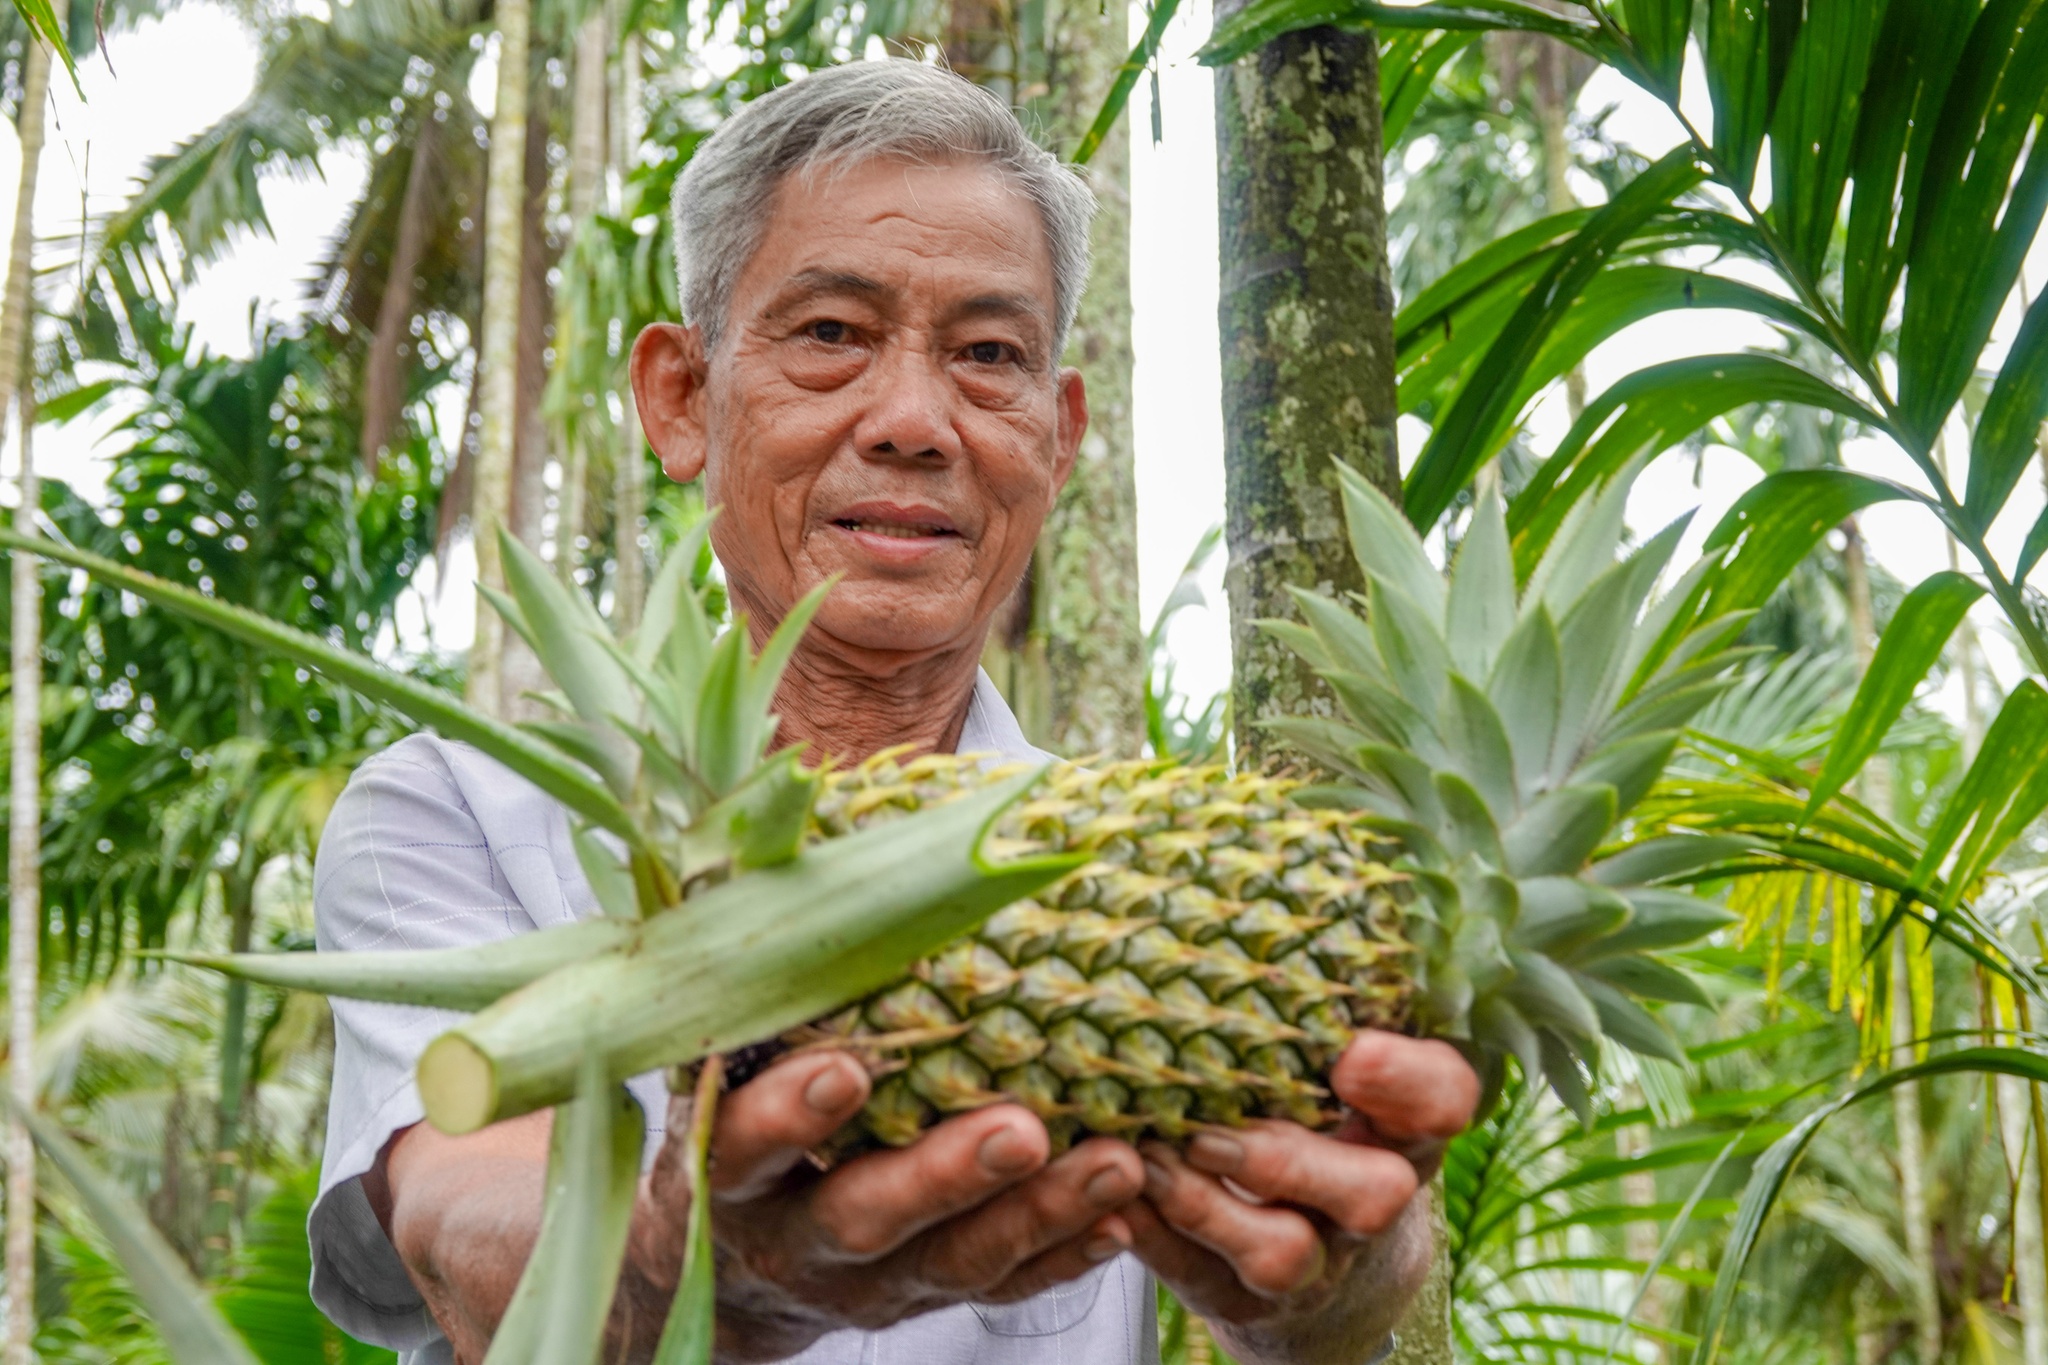 Lão nông miền Tây thu tiền tỉ nhờ trồng cau kết hợp dừa và khóm